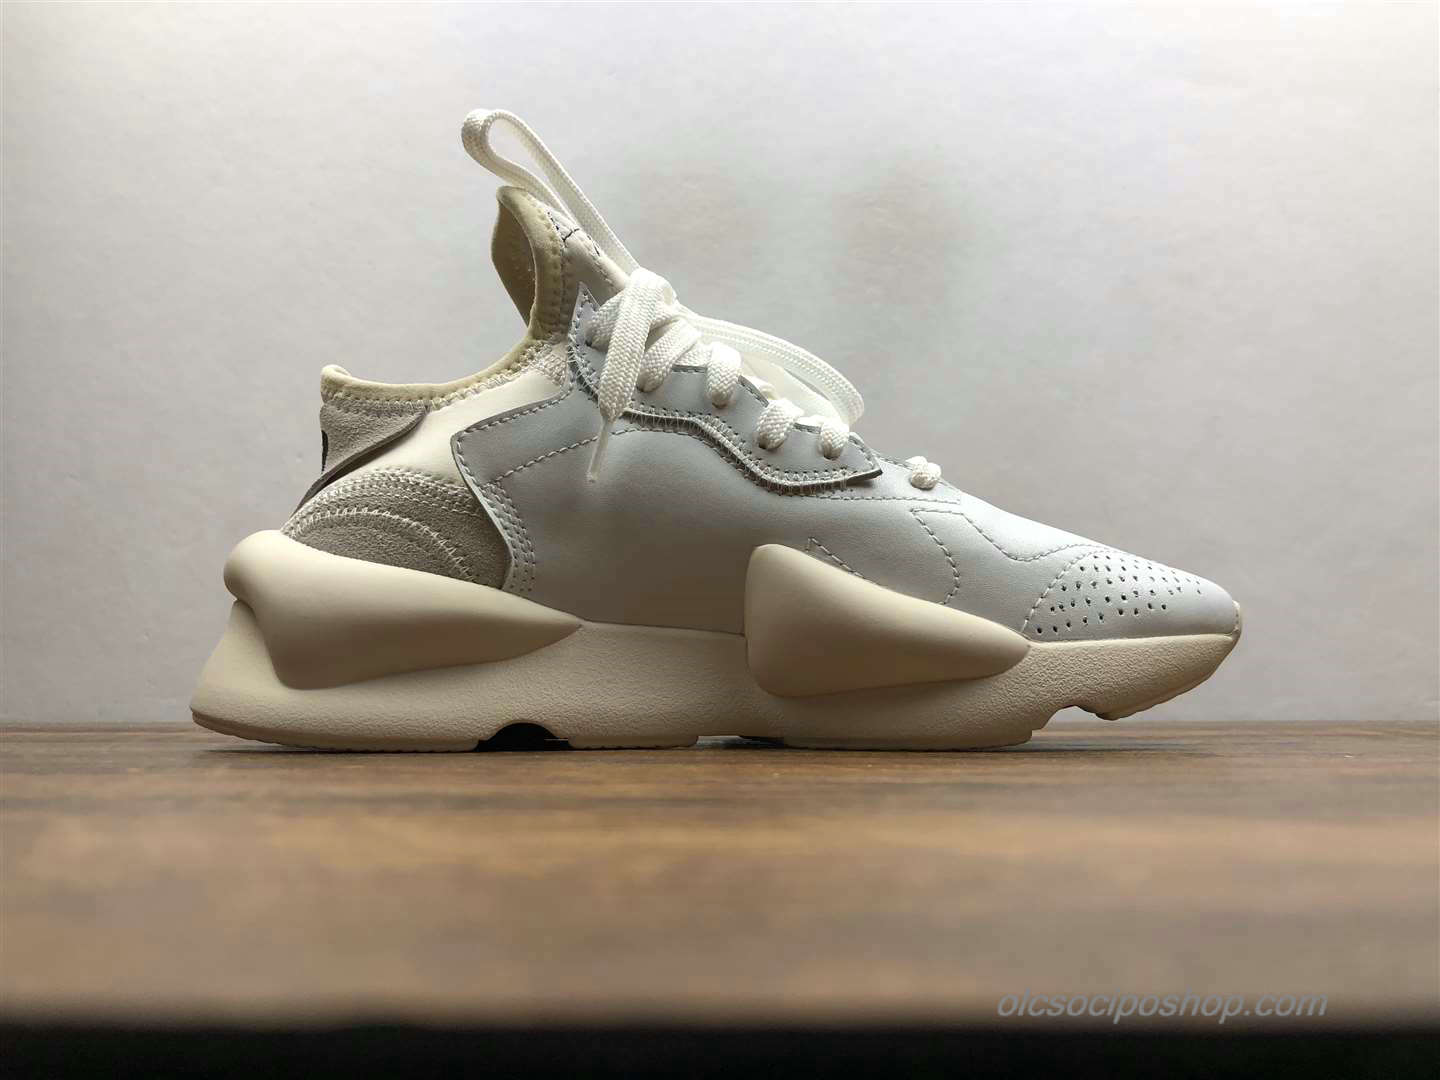 Yohji Yamamoto x Adidas Y-3 Kaiwa Chunky Világos szürke/Piszkosfehér Cipők (A1860)